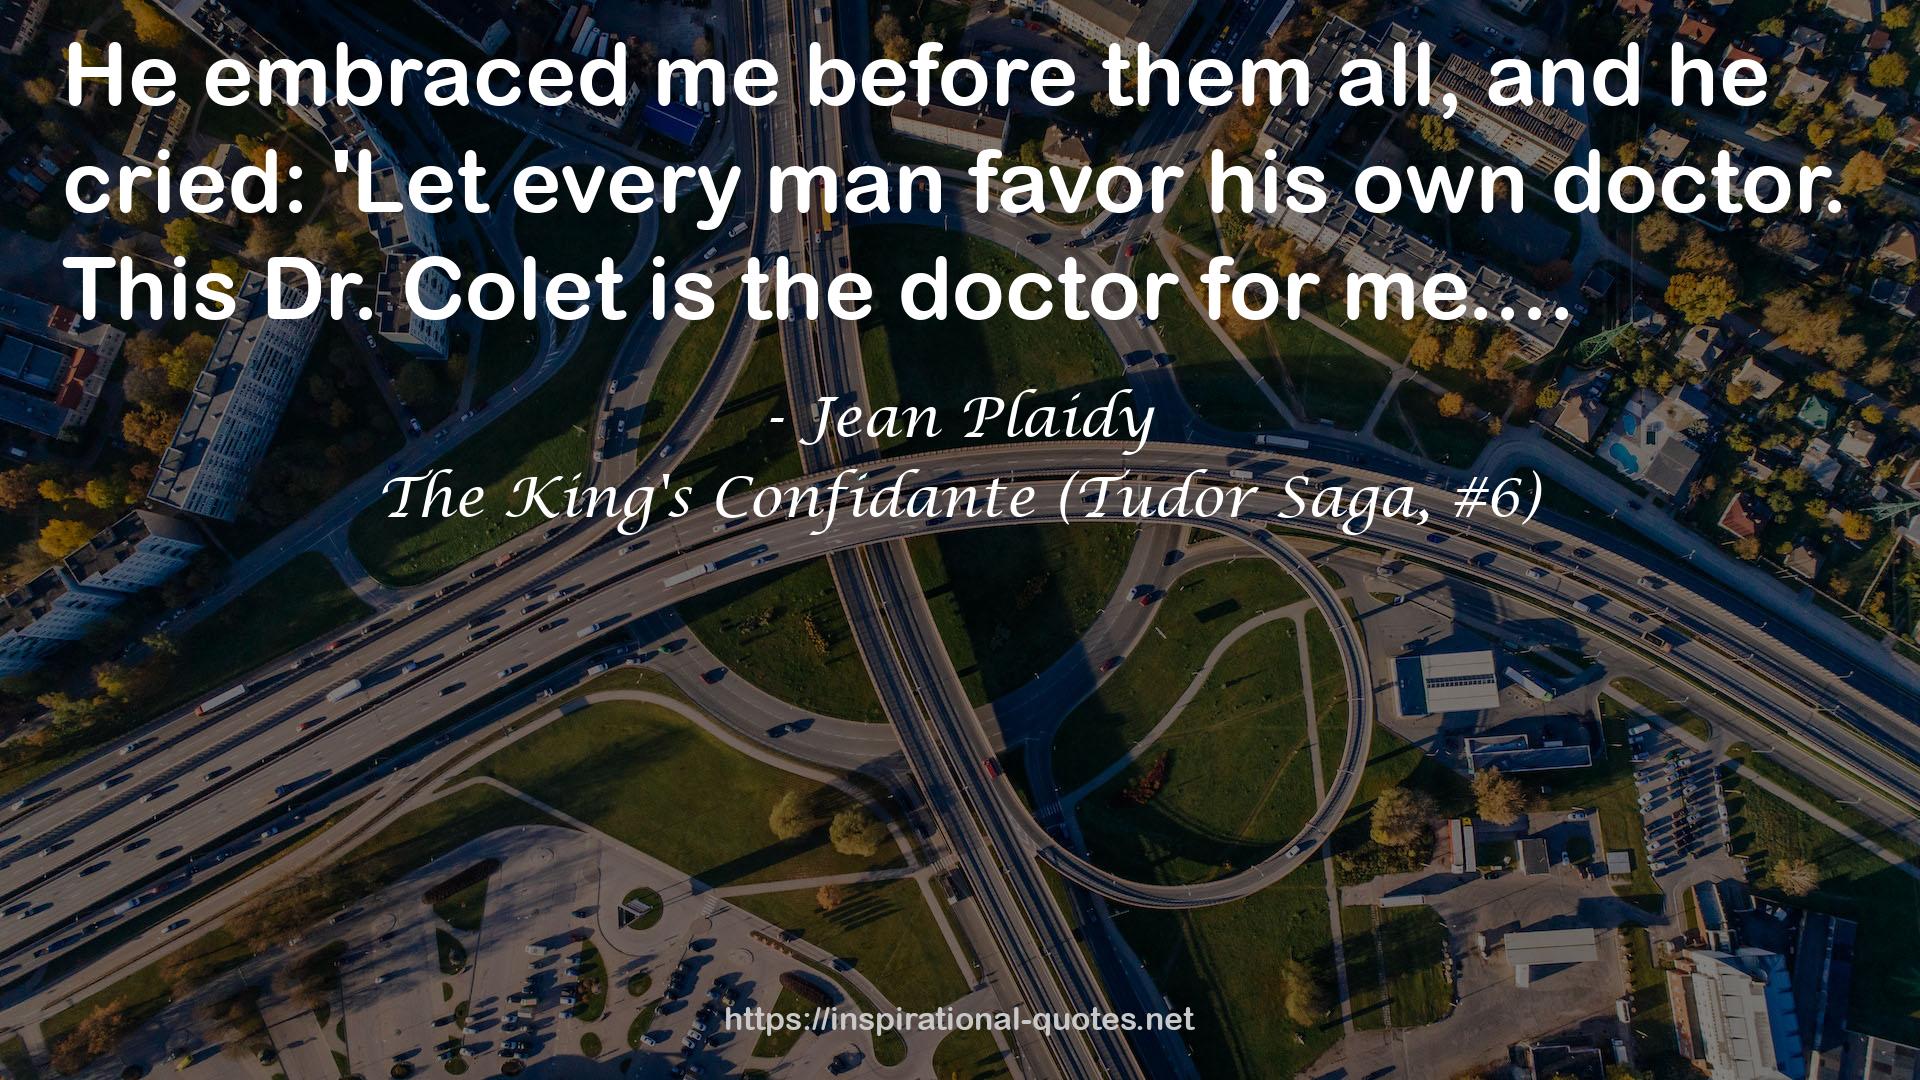 The King's Confidante (Tudor Saga, #6) QUOTES